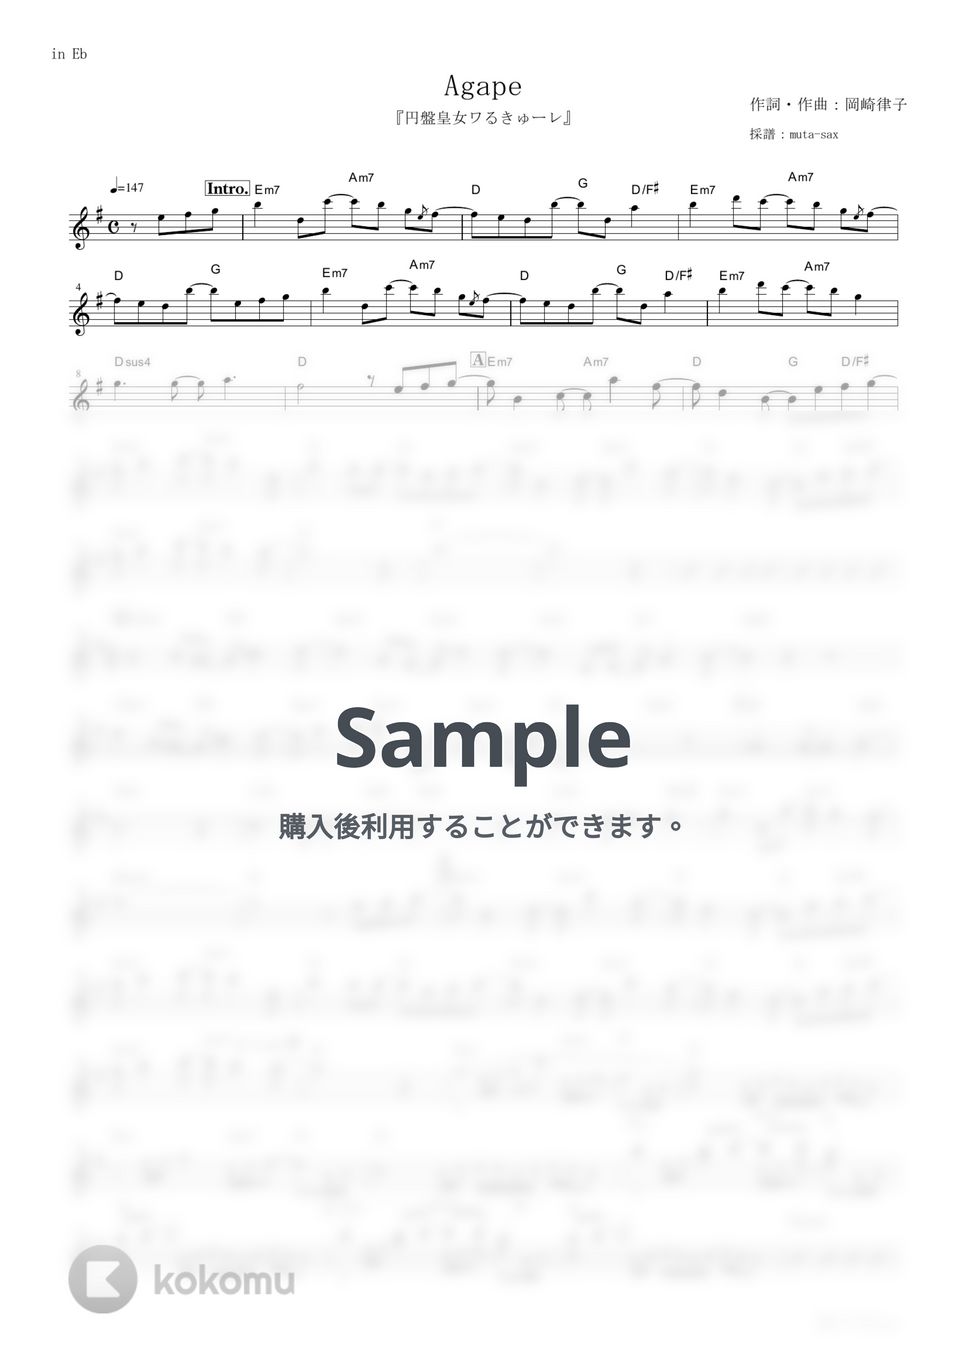 メロキュア - Agape (『円盤皇女ワるきゅーレ』 / in Eb) by muta-sax